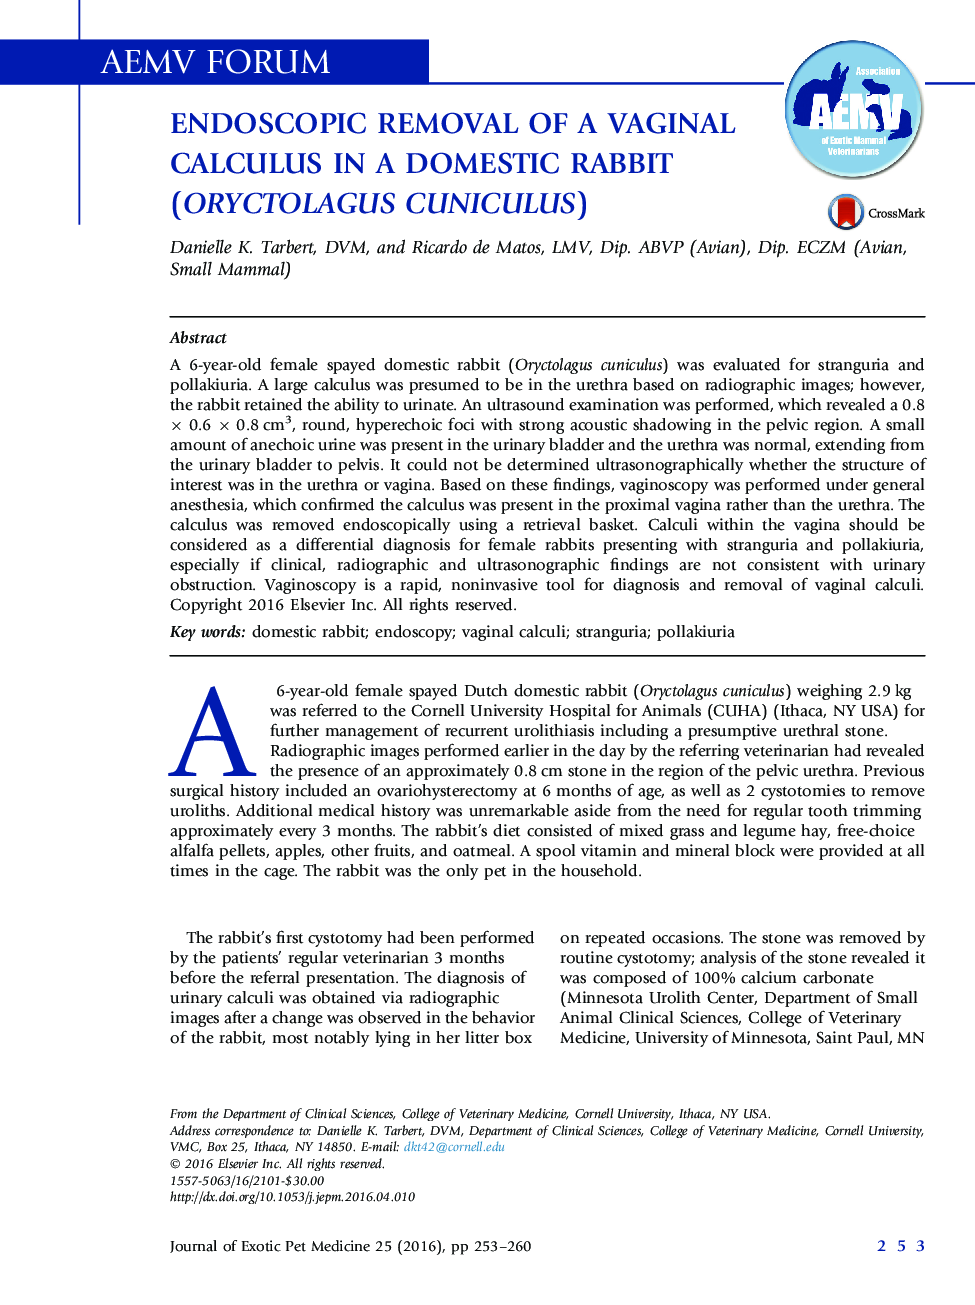 حذف تشخیصی از یک حساب دیفرانسیل واژن در خرگوش خانگی(Oryctolagus cuniculus)